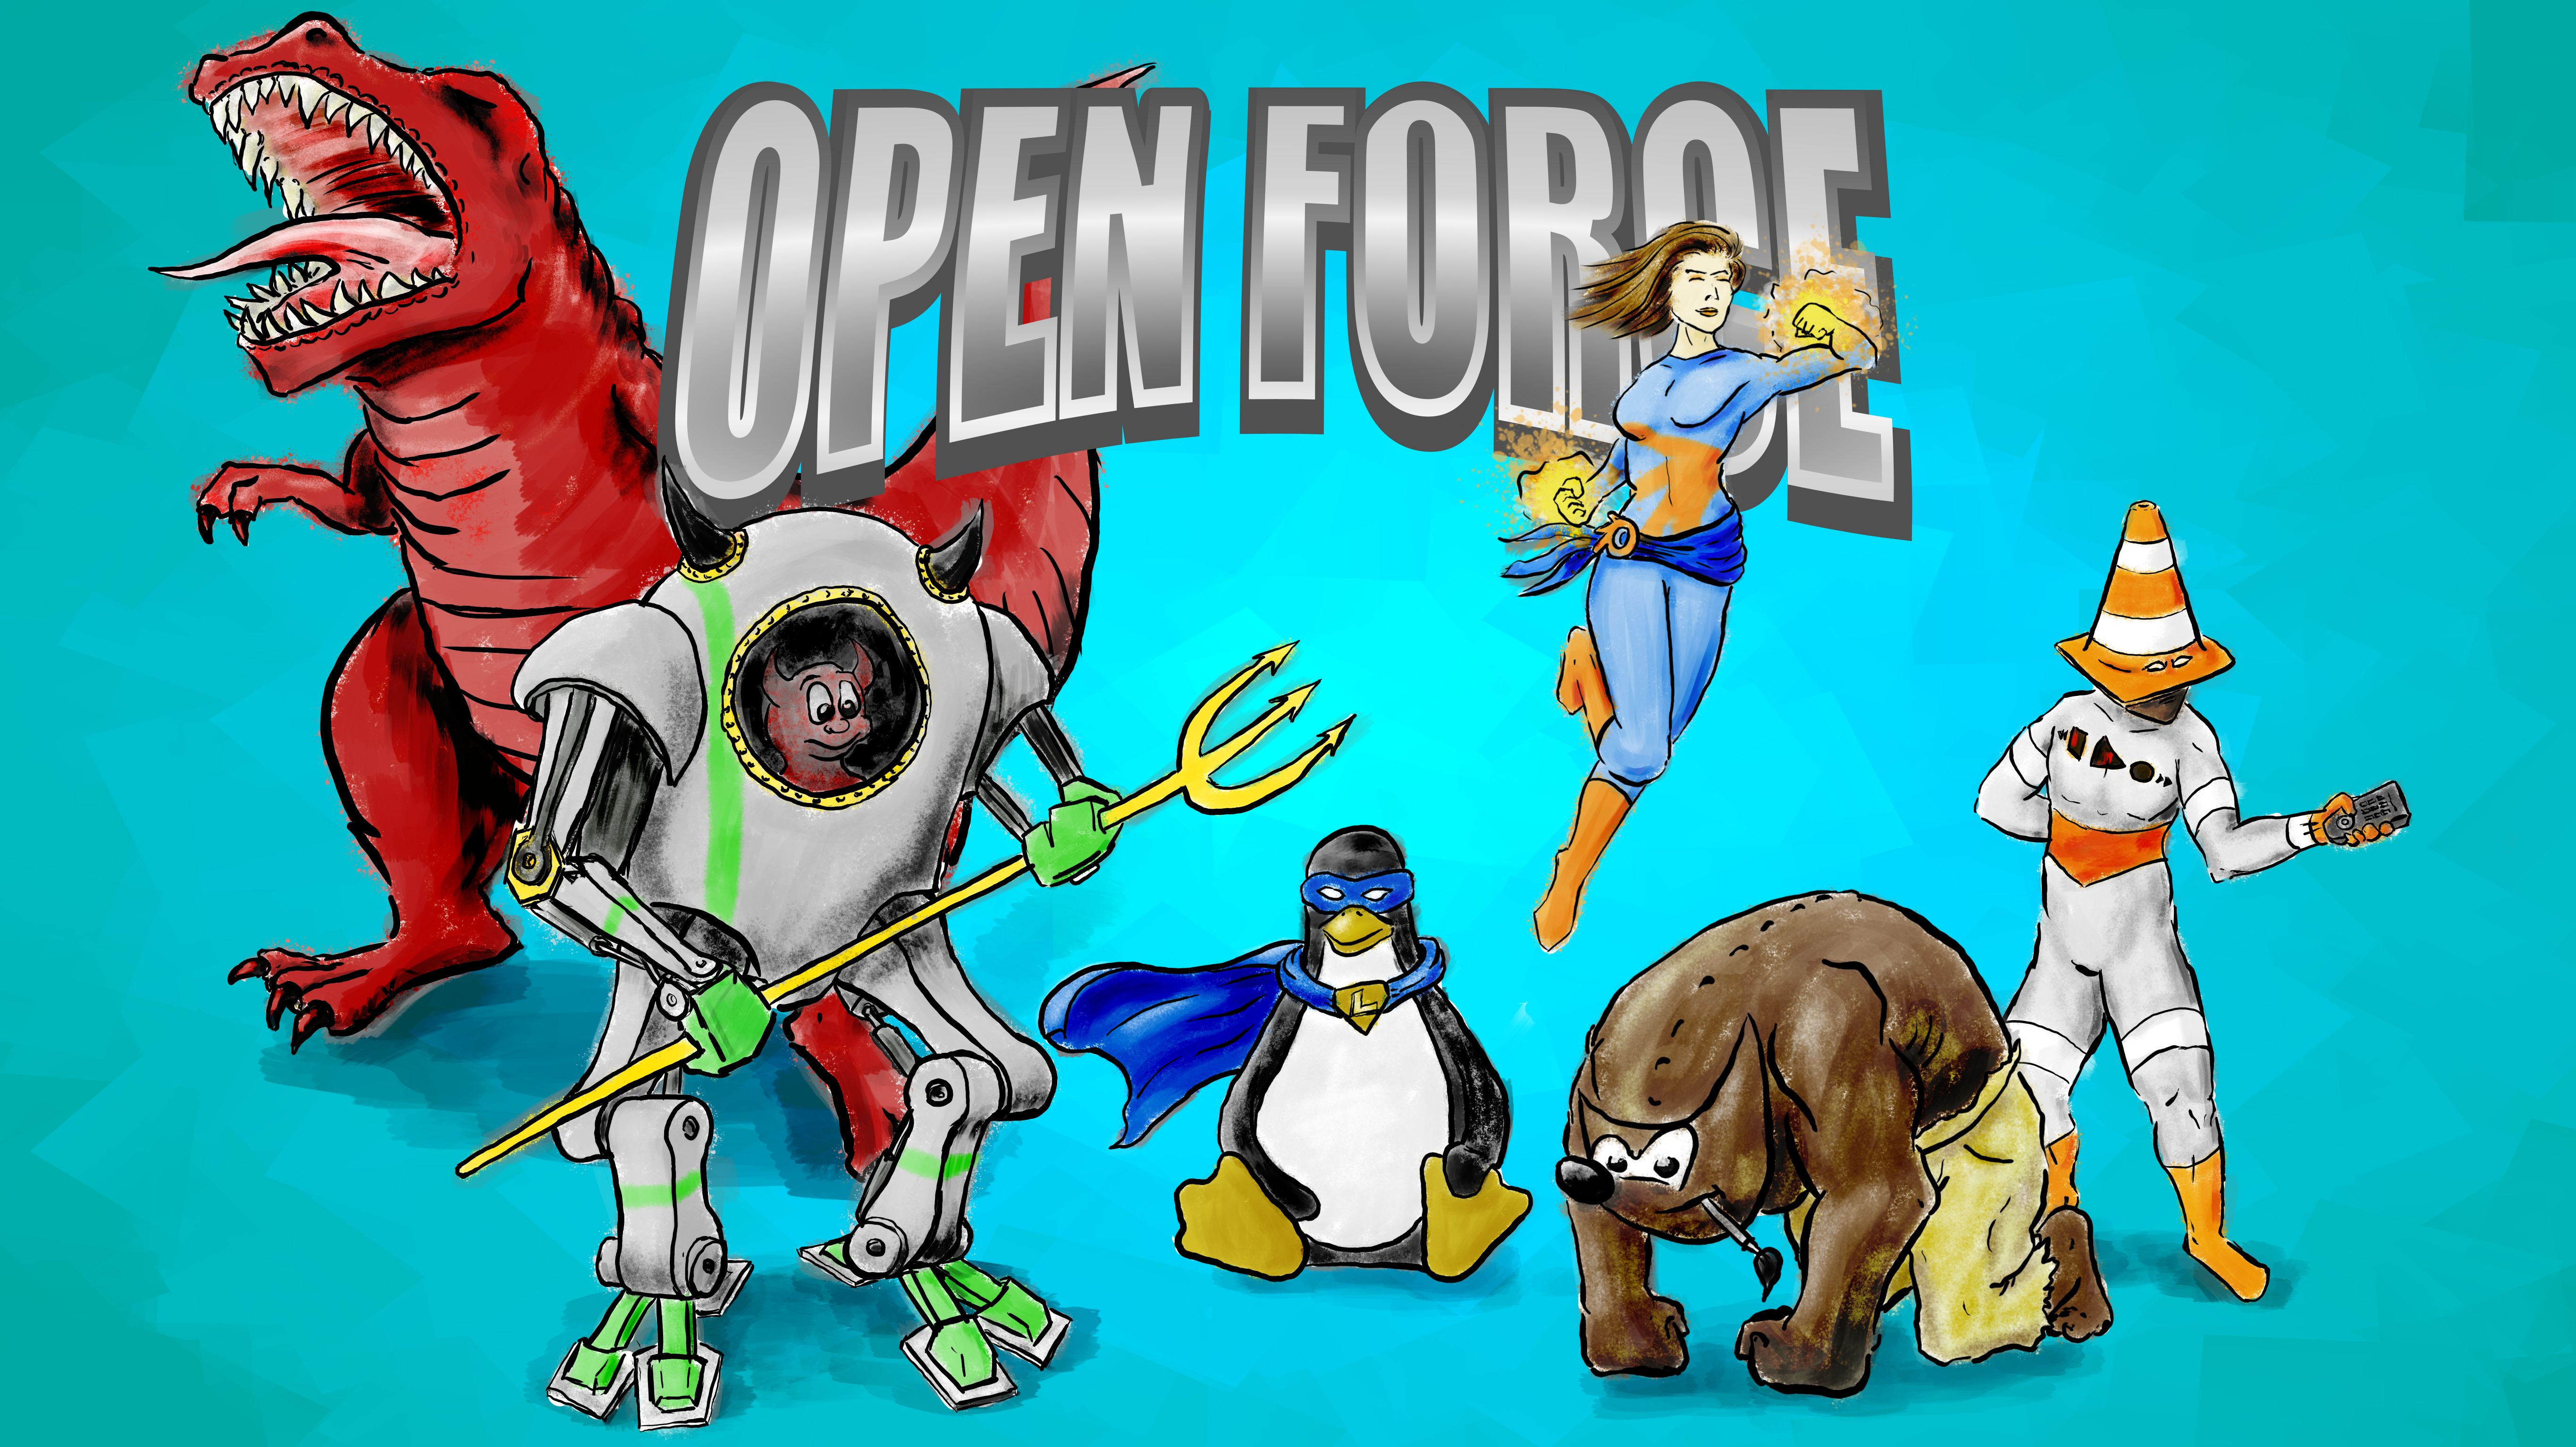 OpenForce